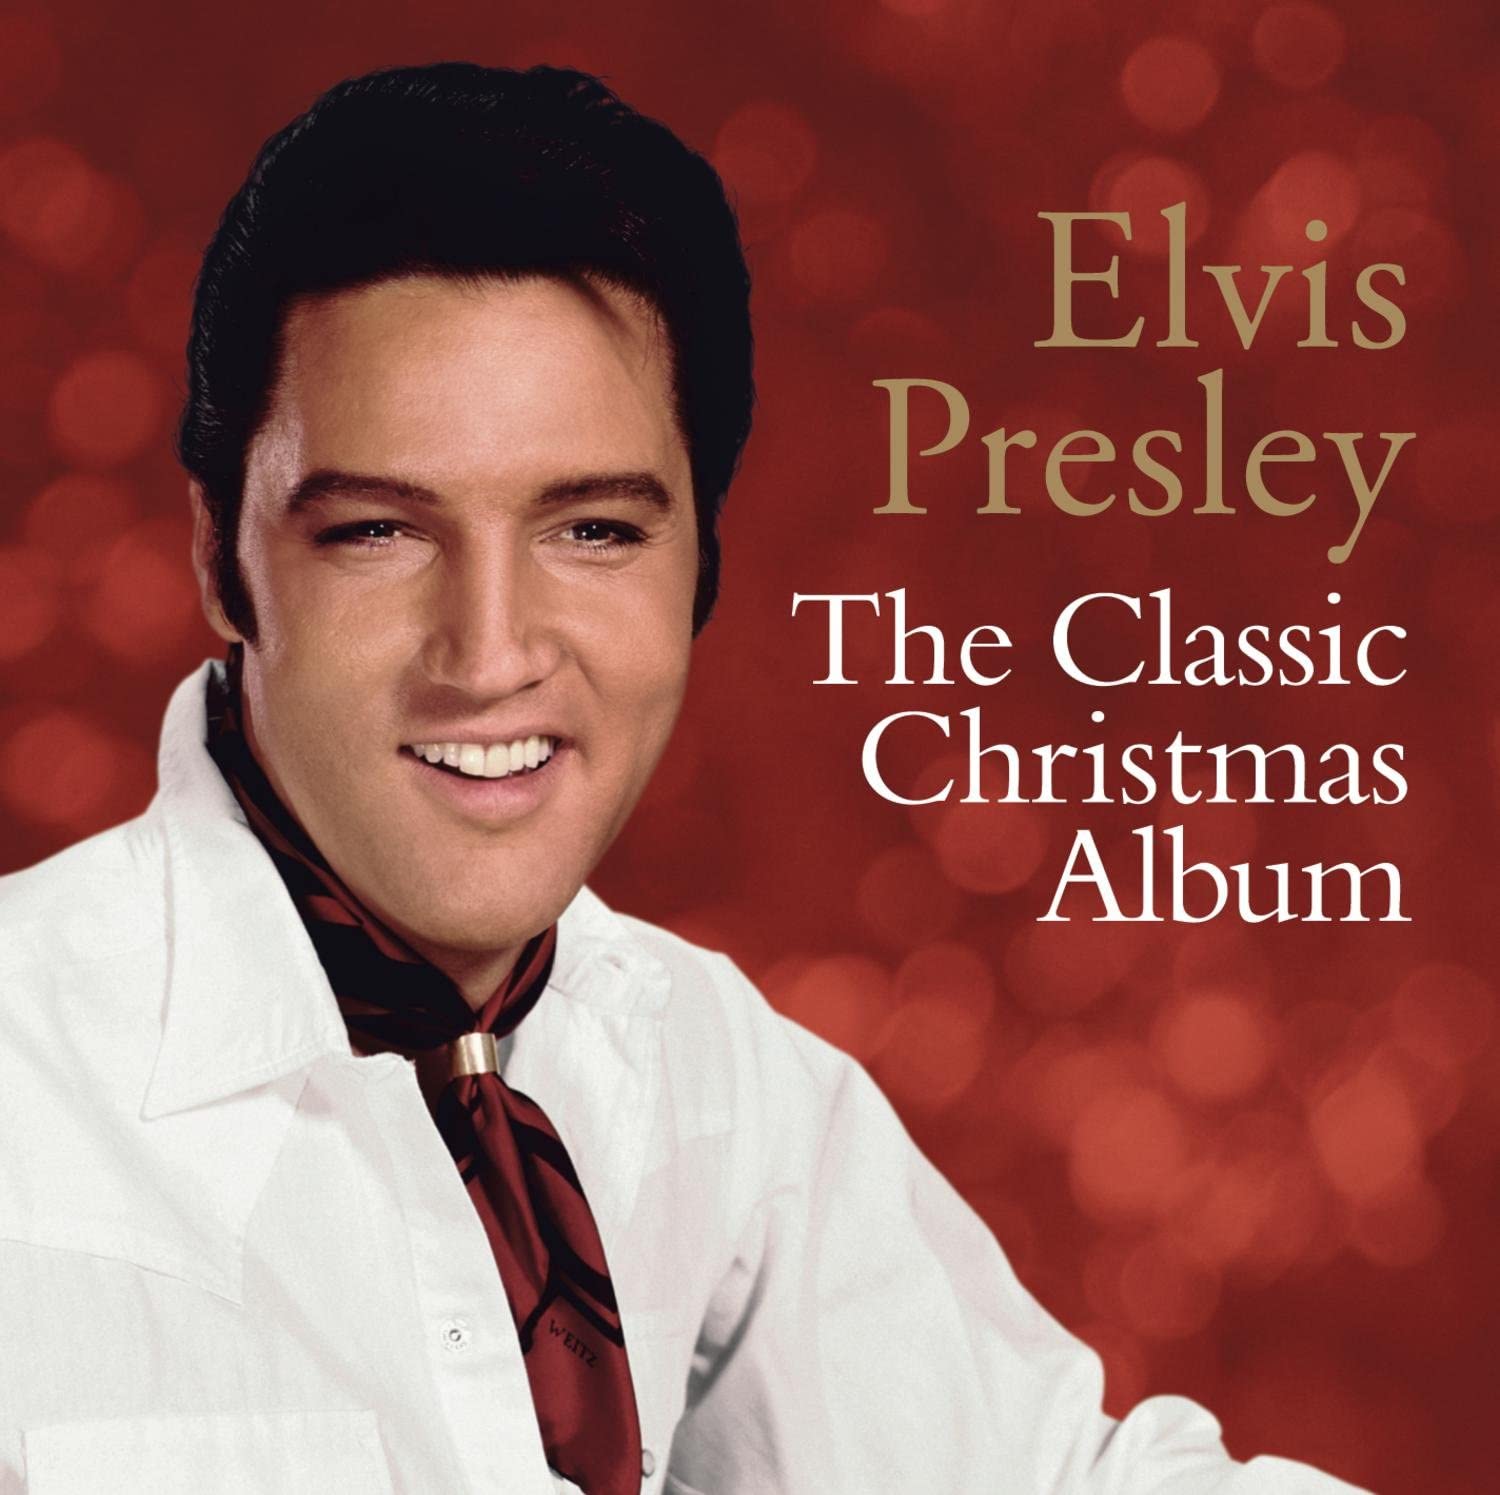 elvis-presley-the-searcher-Elvis_Presley_album5.jpg